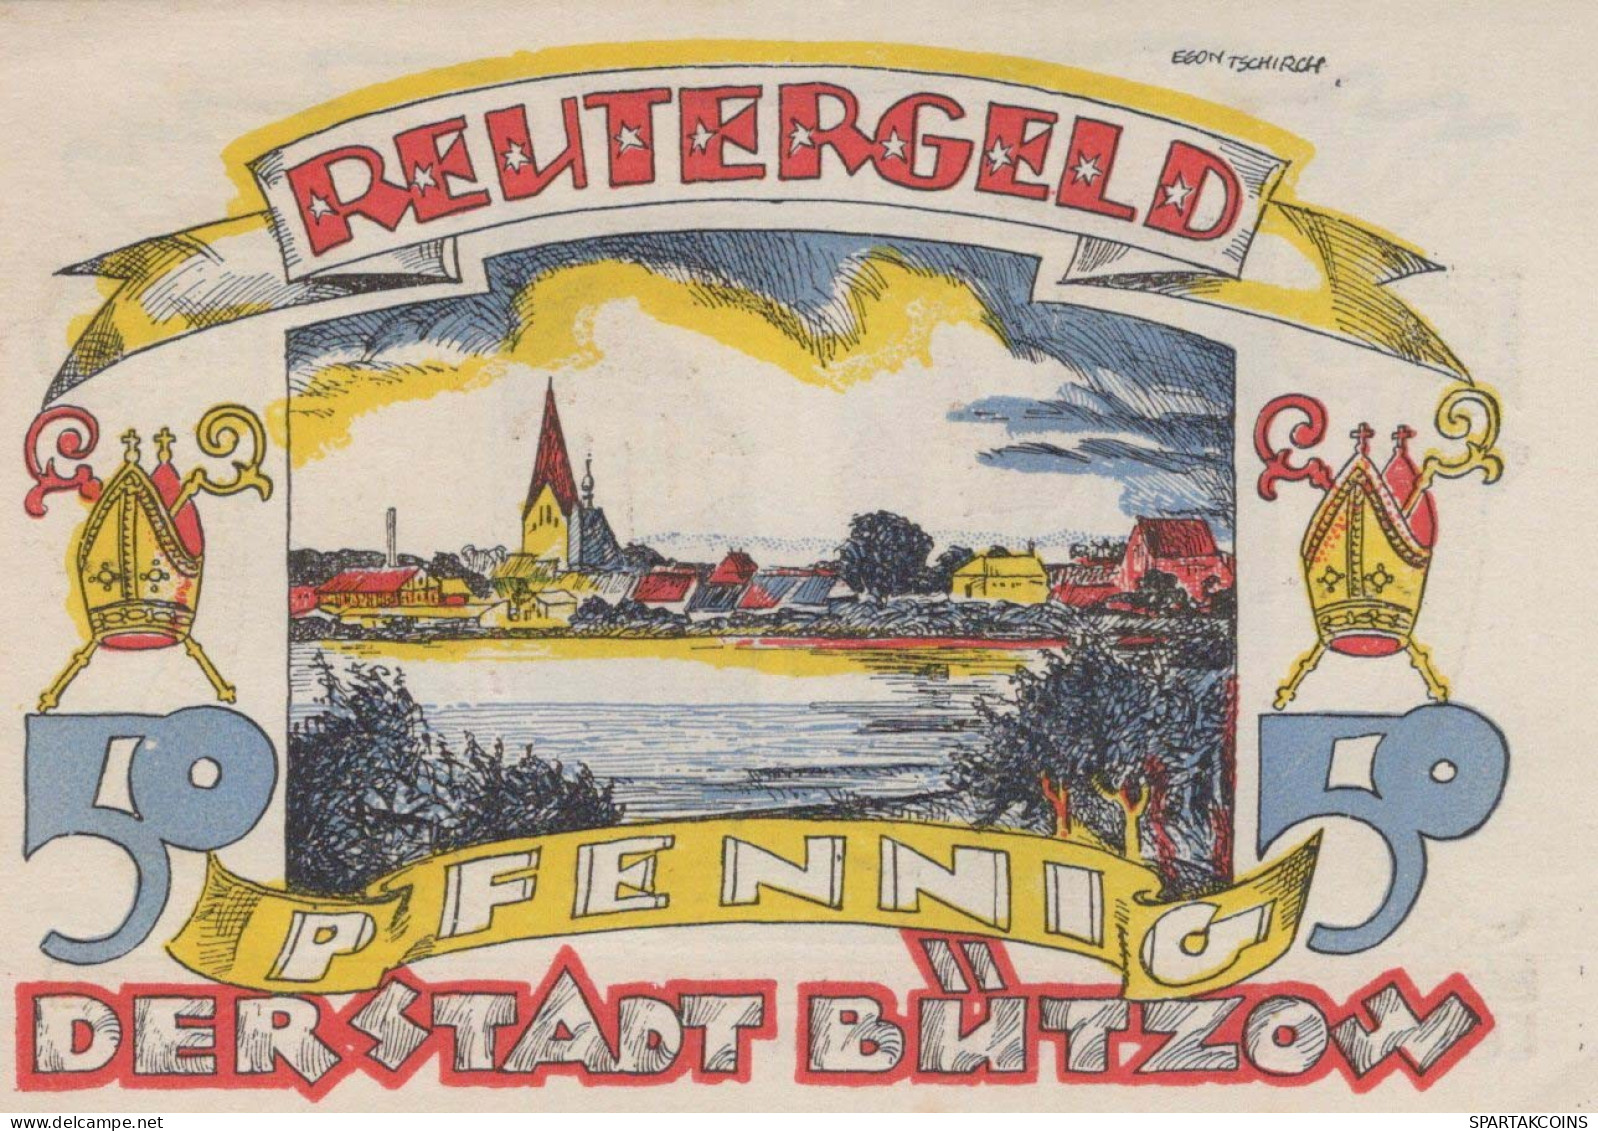 50 PFENNIG 1922 Stadt BÜTZOW Mecklenburg-Schwerin DEUTSCHLAND Notgeld #PJ134 - [11] Local Banknote Issues